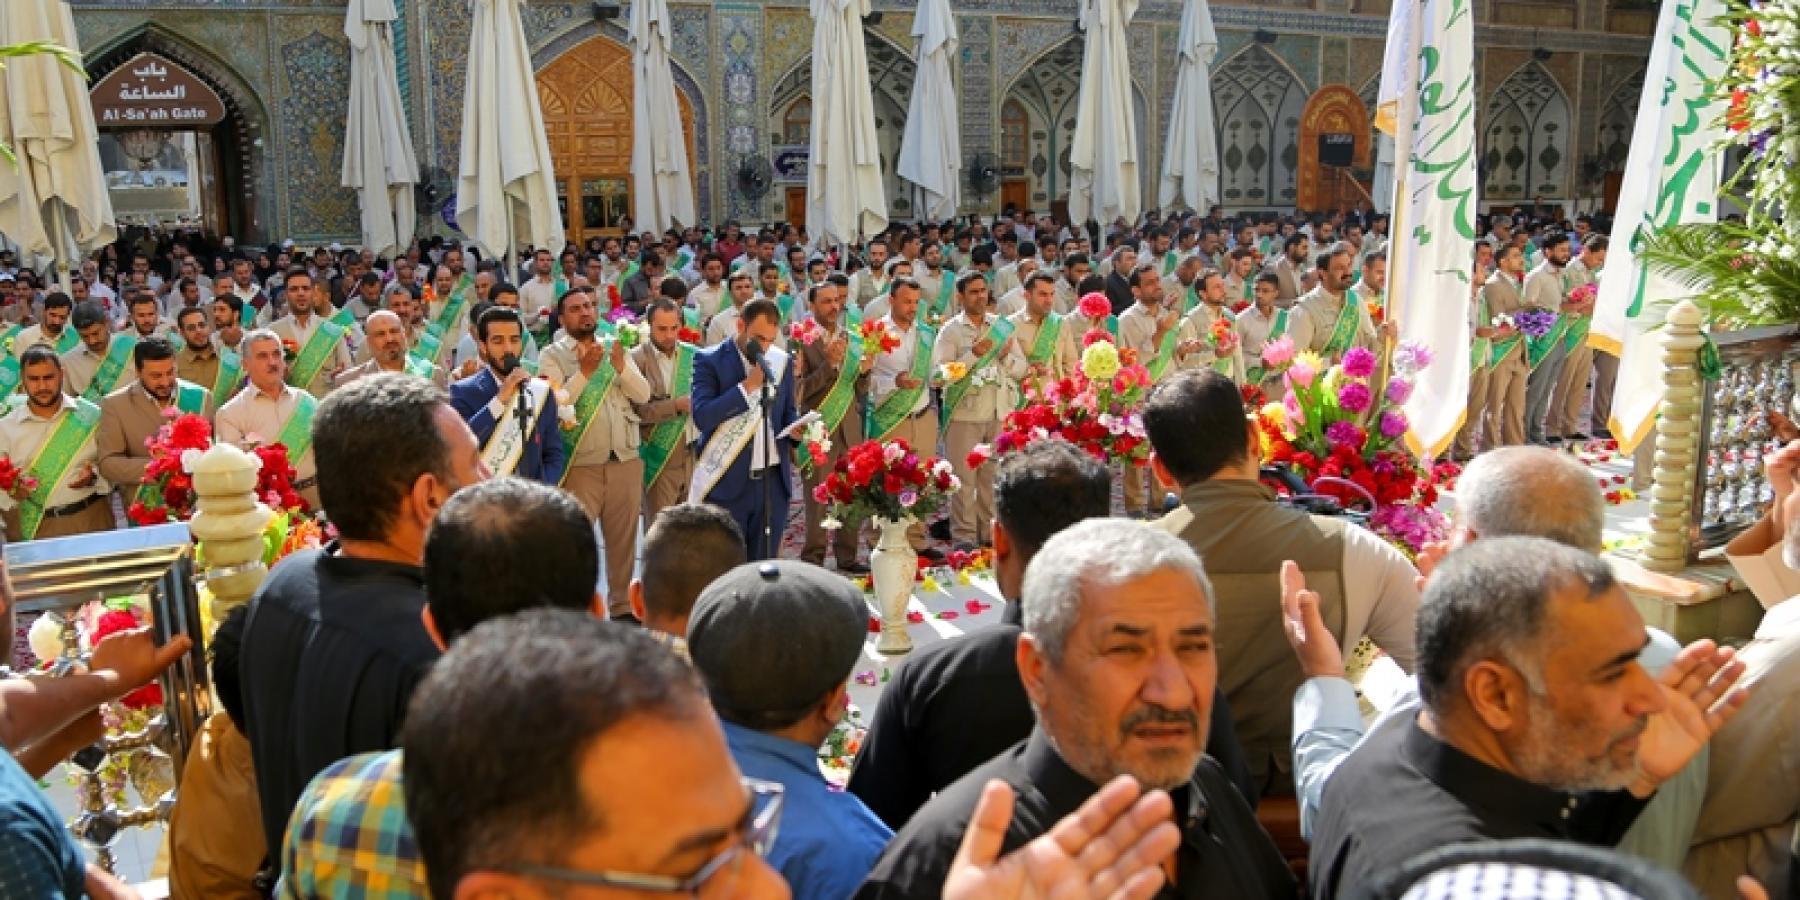 منتسبو العتبة العلوية وحشود الزائرين يحتفلون بمناسبة المبعث النبوي الشريف في الصحن العلوي المطهر